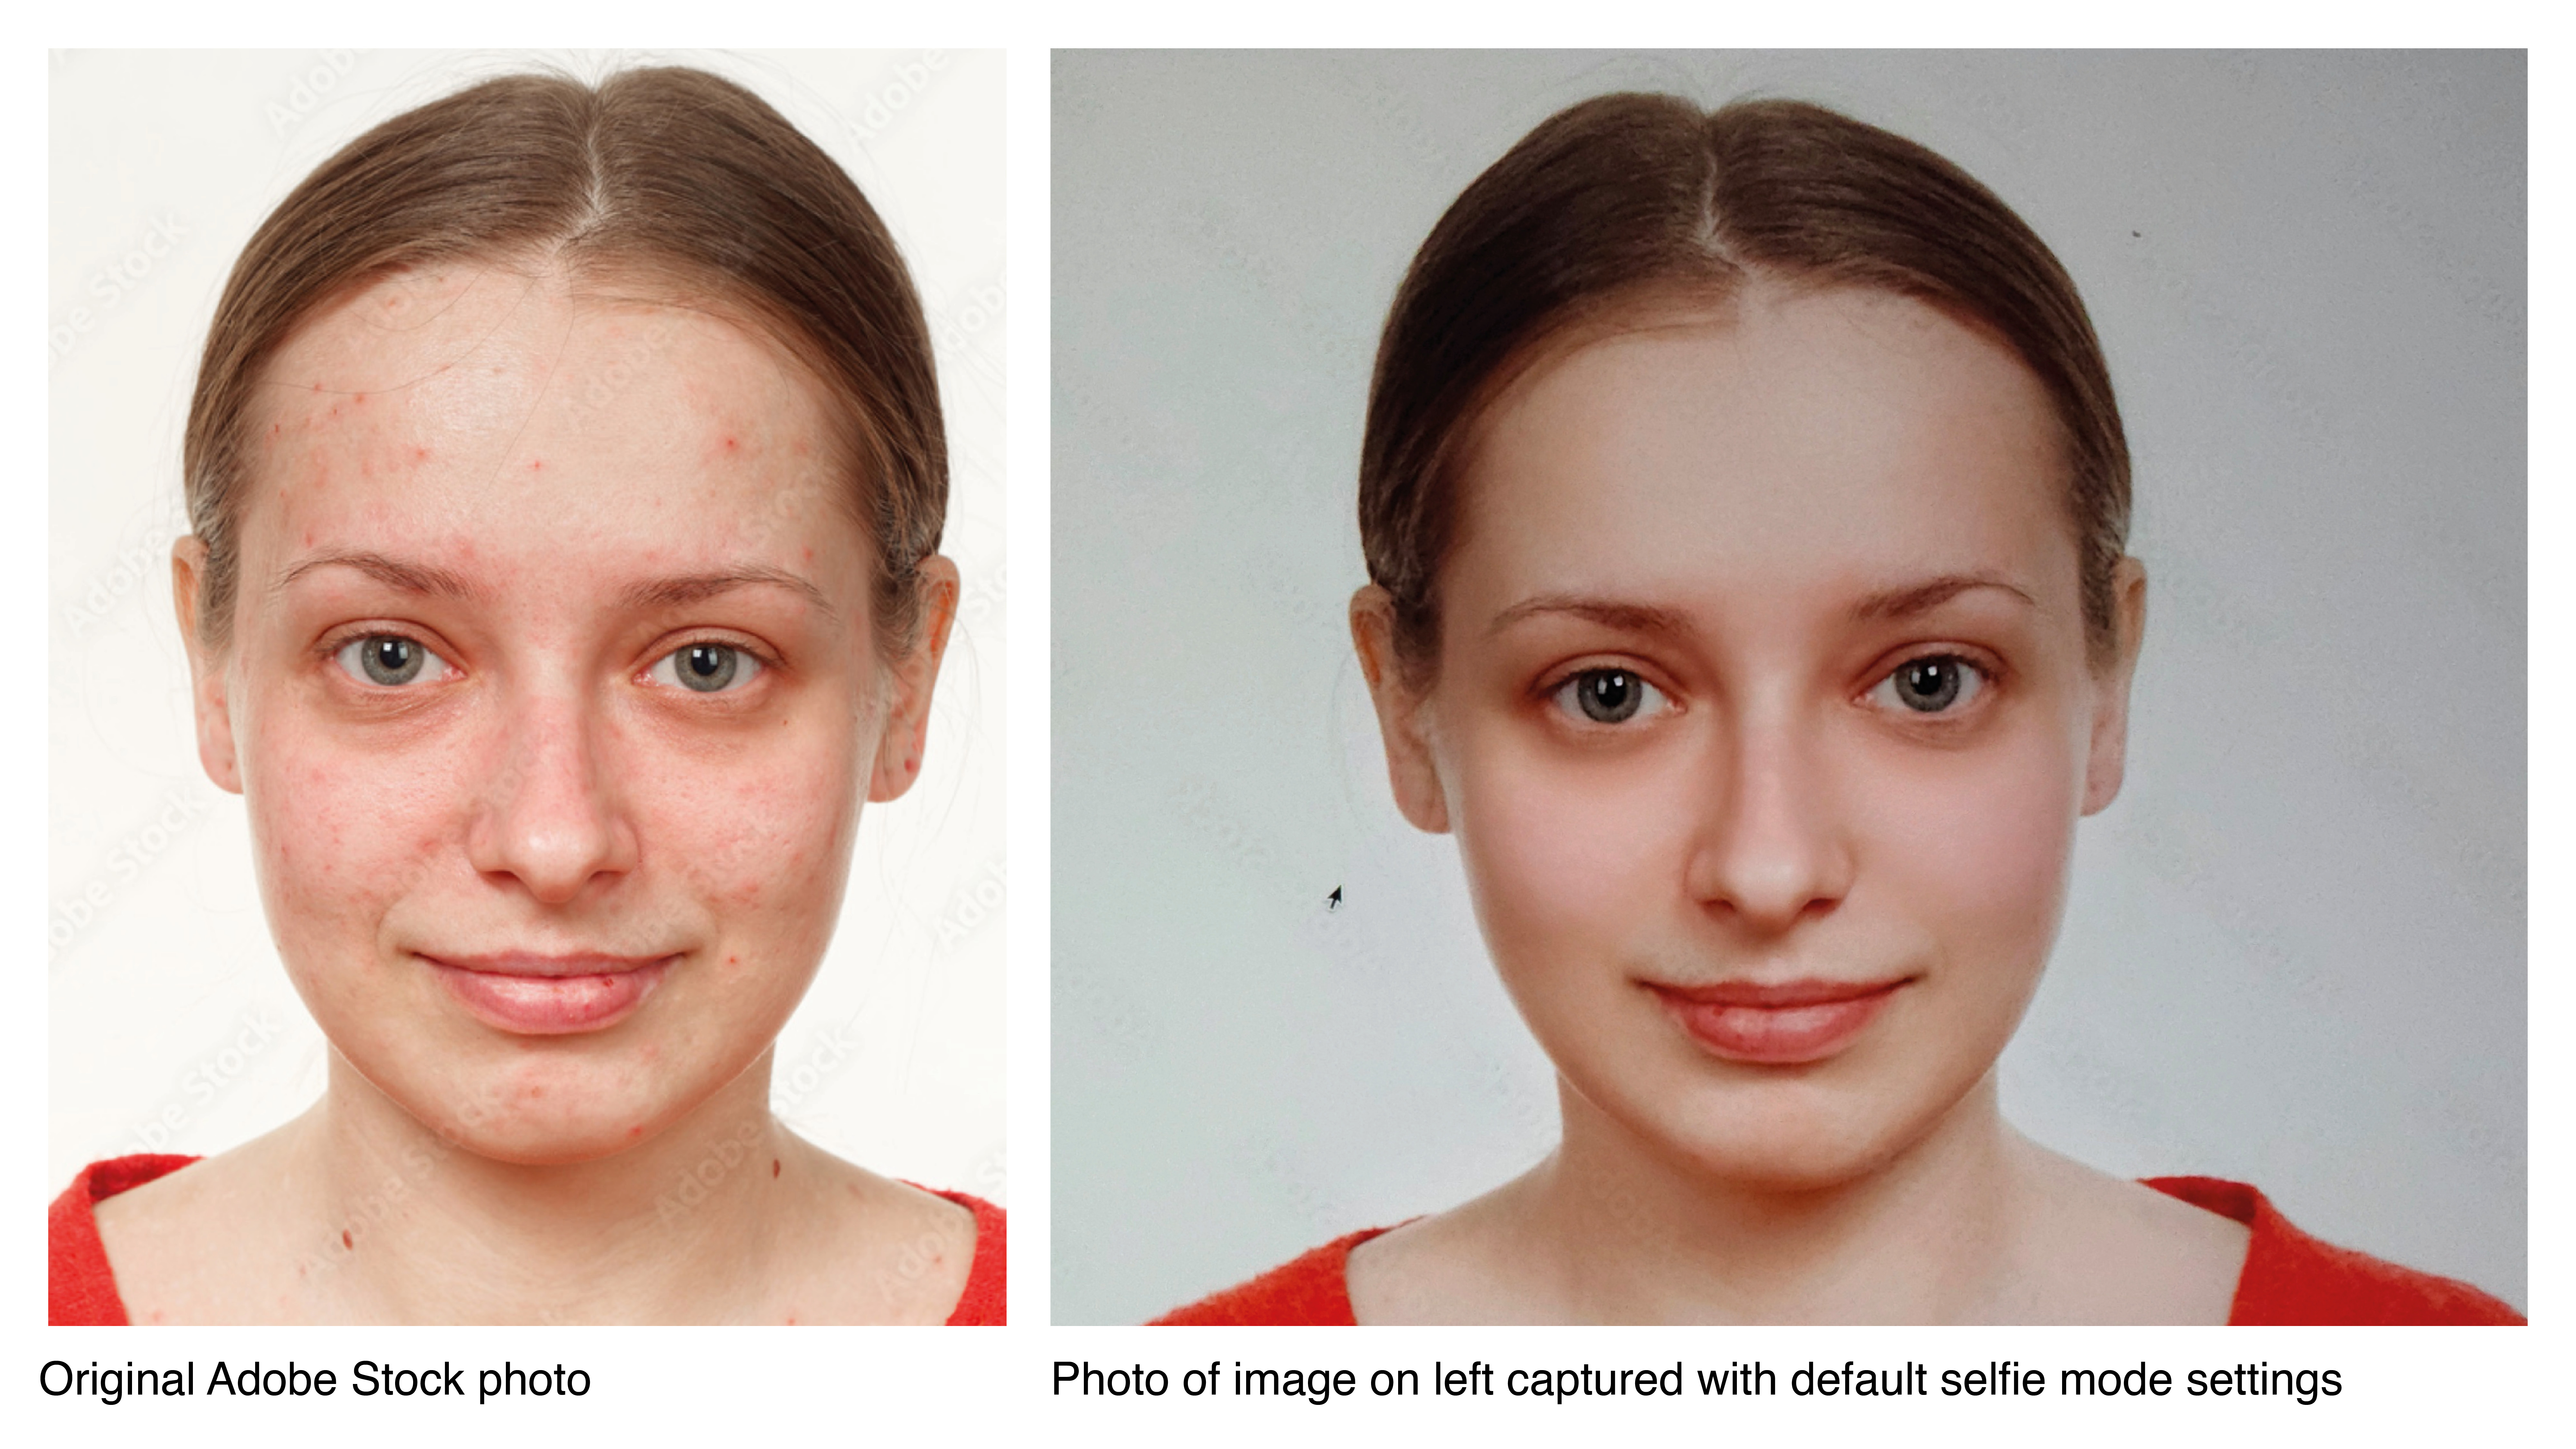 مثال على الدرجة التي تطبق بها كاميرات الصور الشخصية مرشحات التجميل الثقيلة بشكل افتراضي